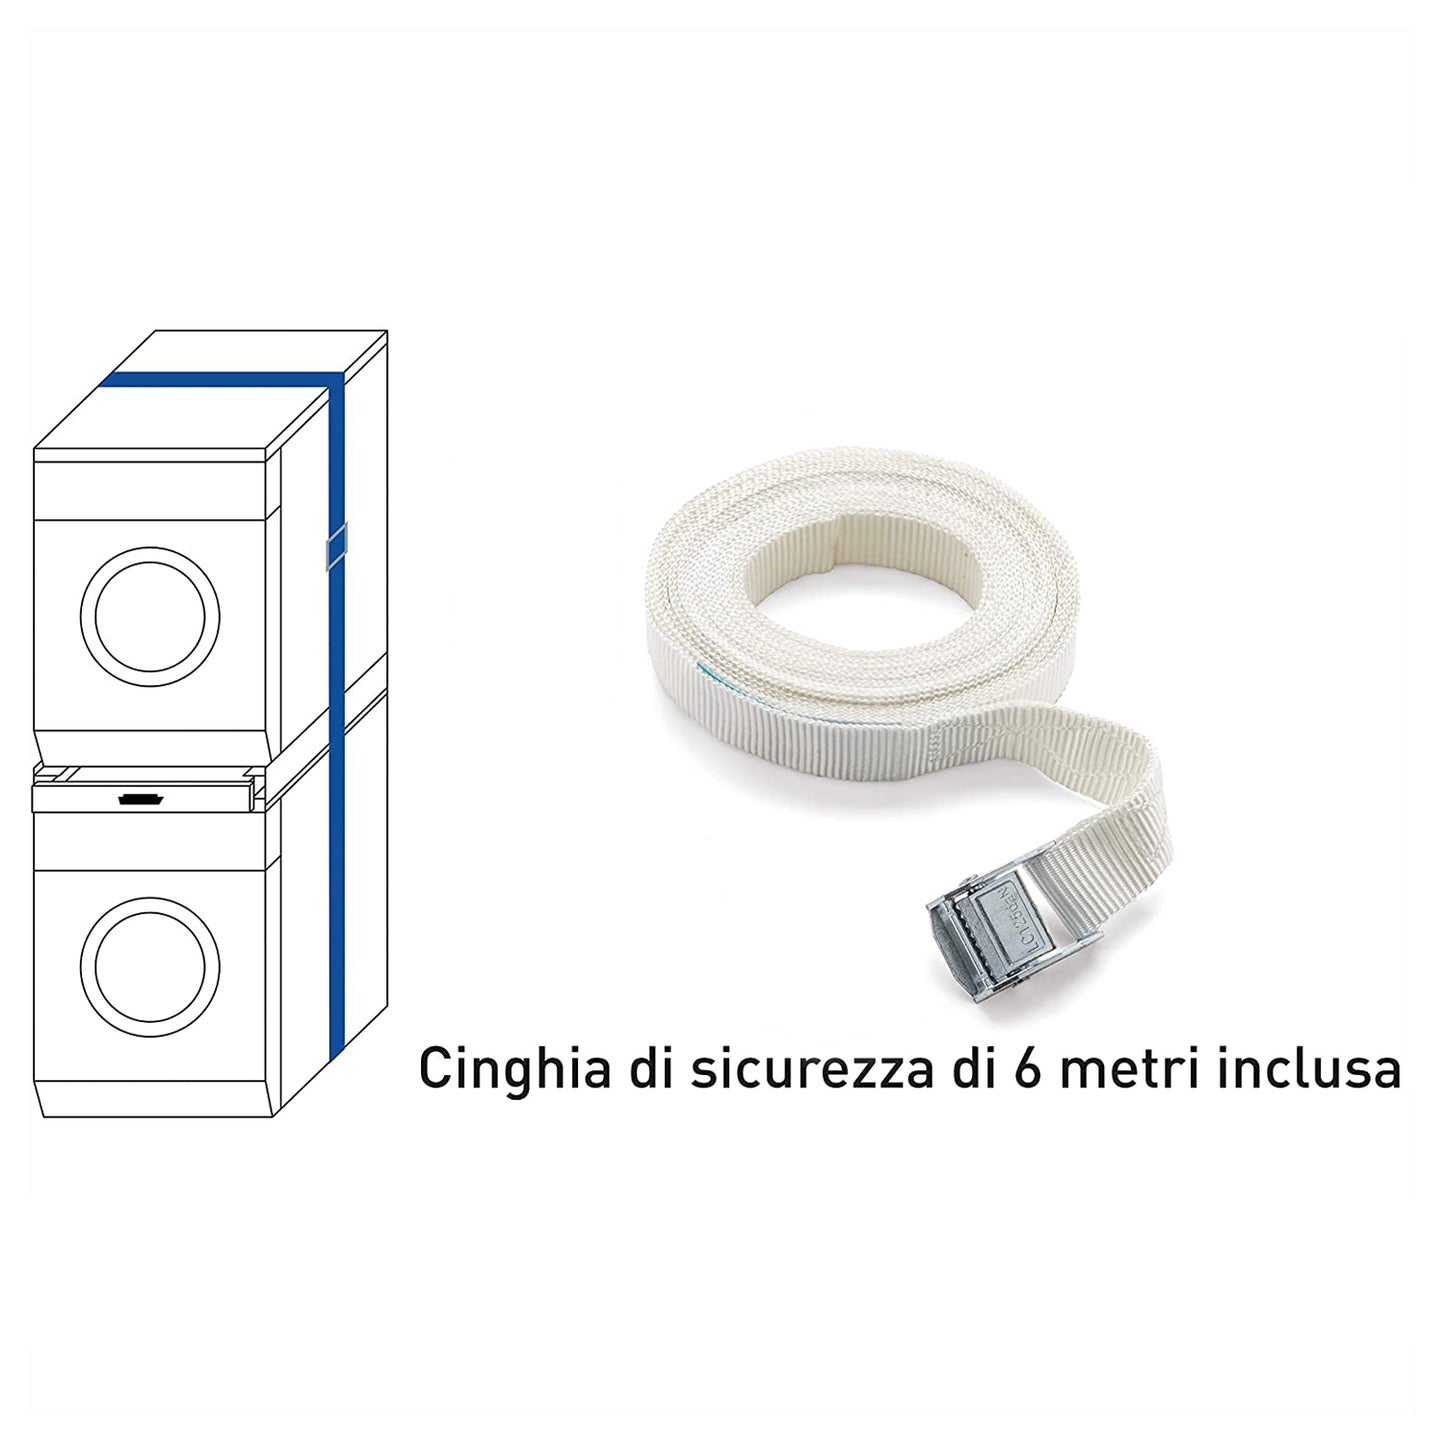 Meliconi Kit di sovrapposizione universale per lavatrice e asciugatrice con ripiano estraibile e cinghia di sicurezza inclusa, made in Italy